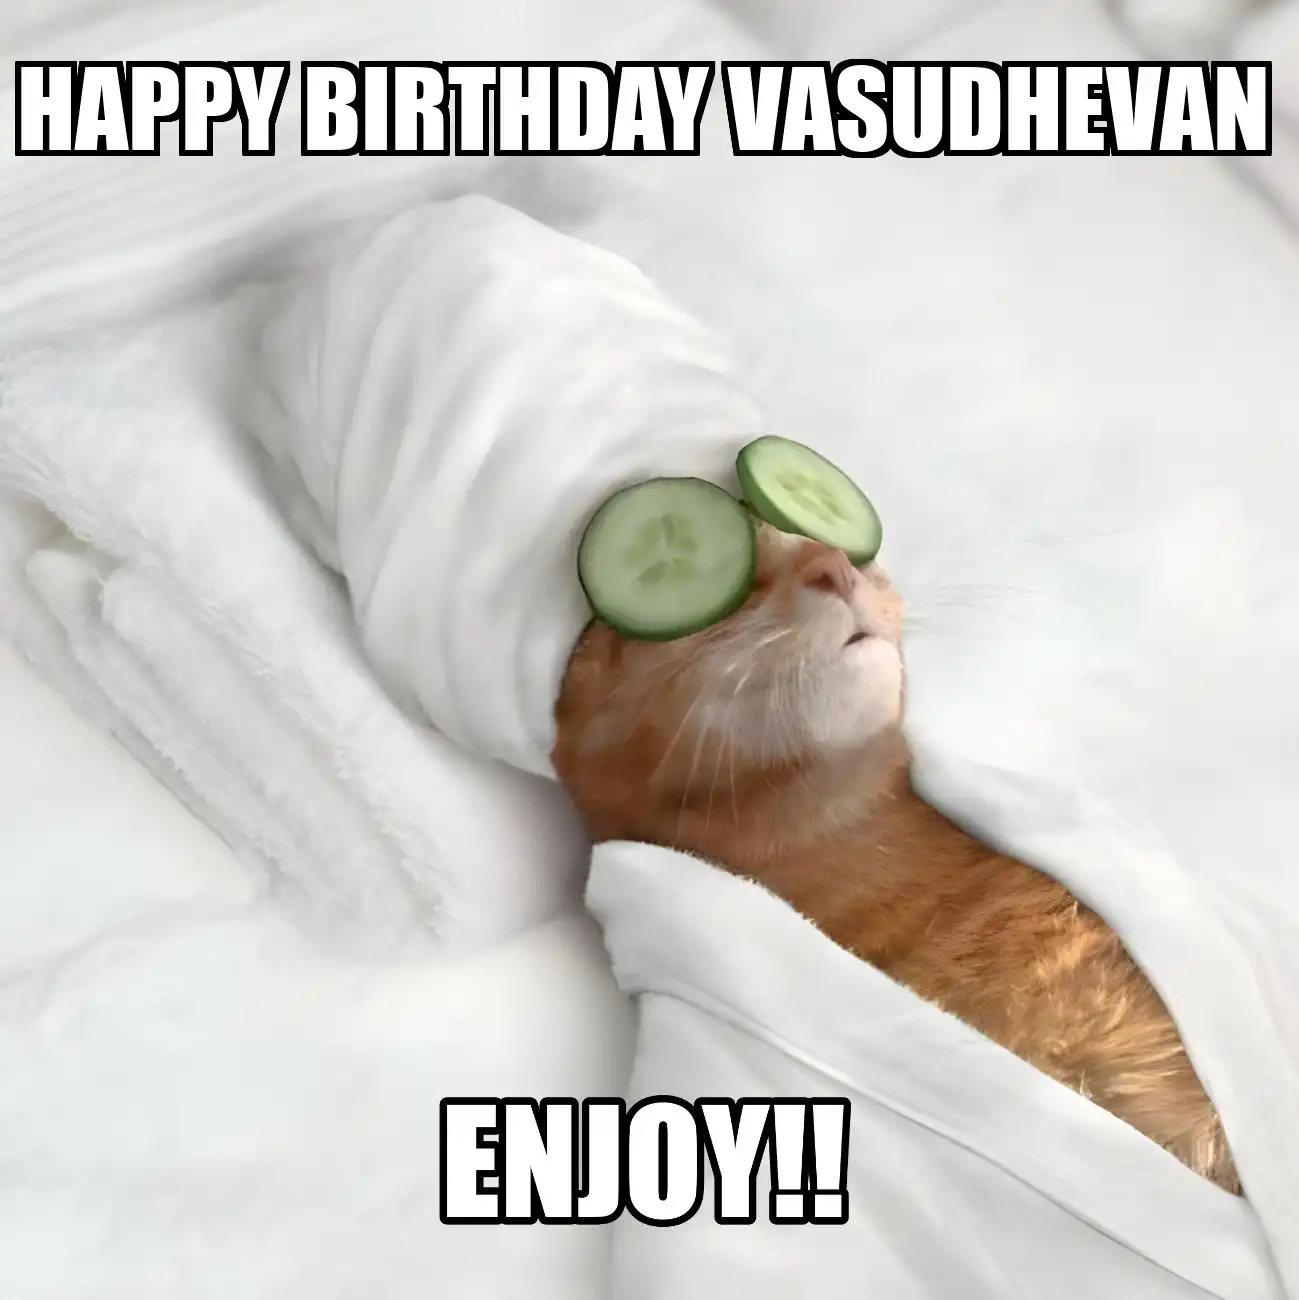 Happy Birthday Vasudhevan Enjoy Cat Meme